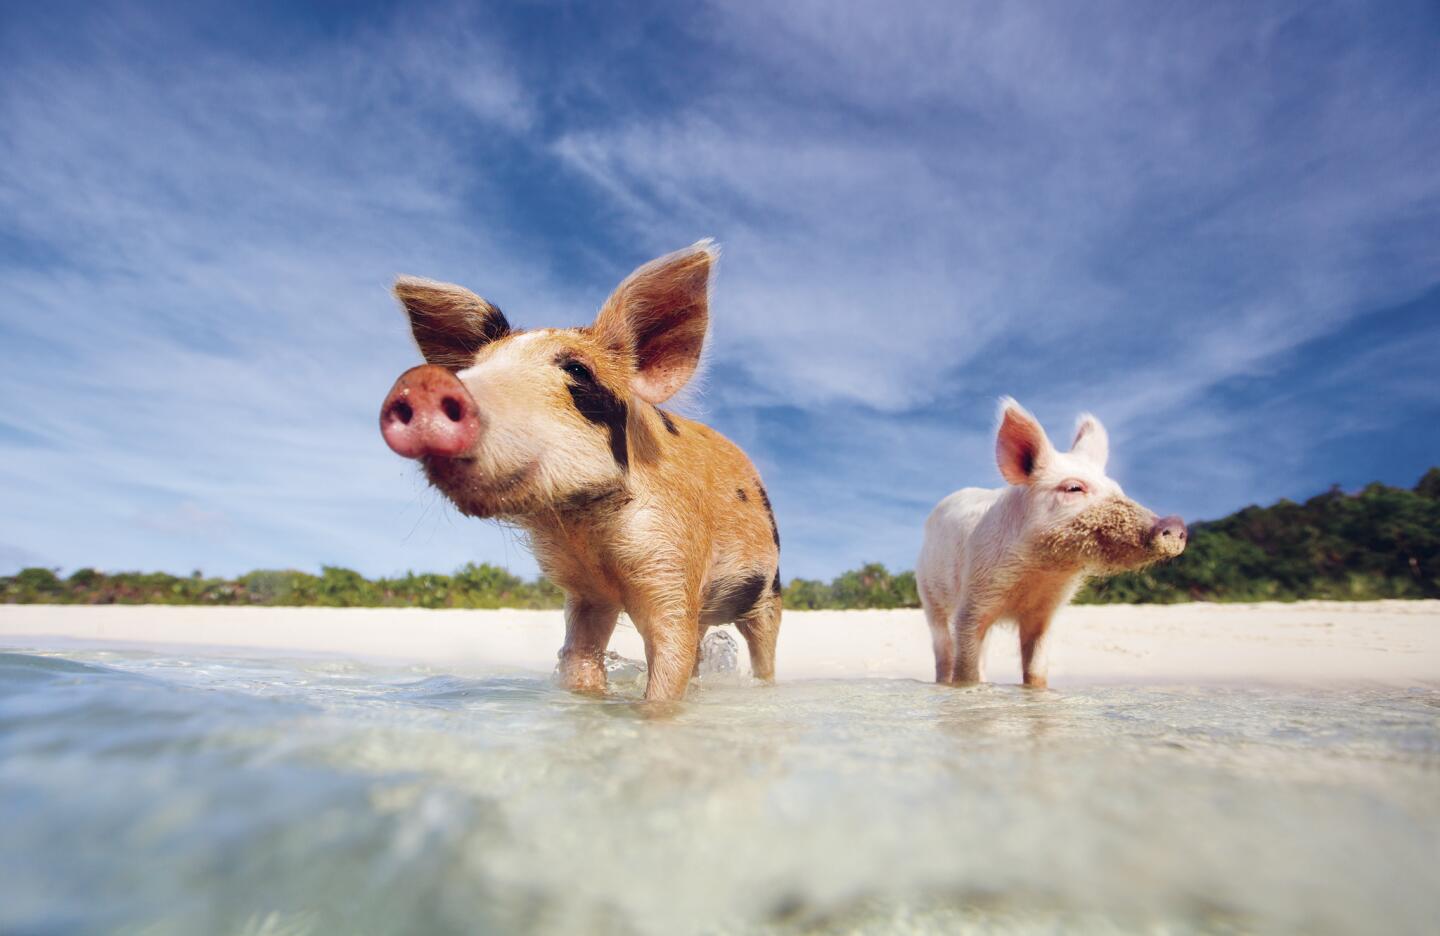 Pig Beach – Big Major Cay, the Bahamas